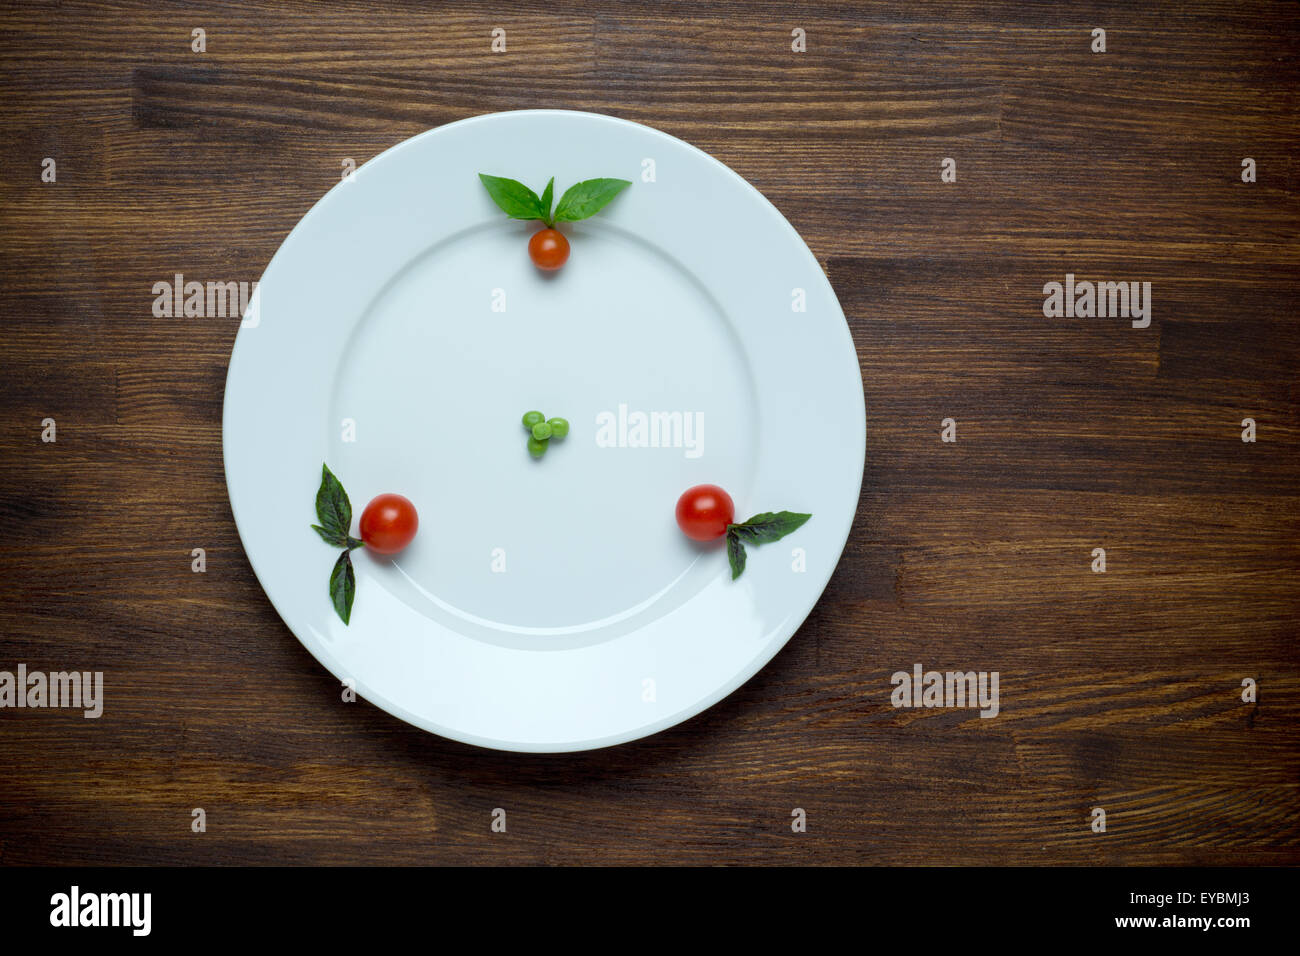 Cibo sano tema: piselli verdi su una piastra con pomodori ciliegia. Tavolo in legno sfondo Foto Stock